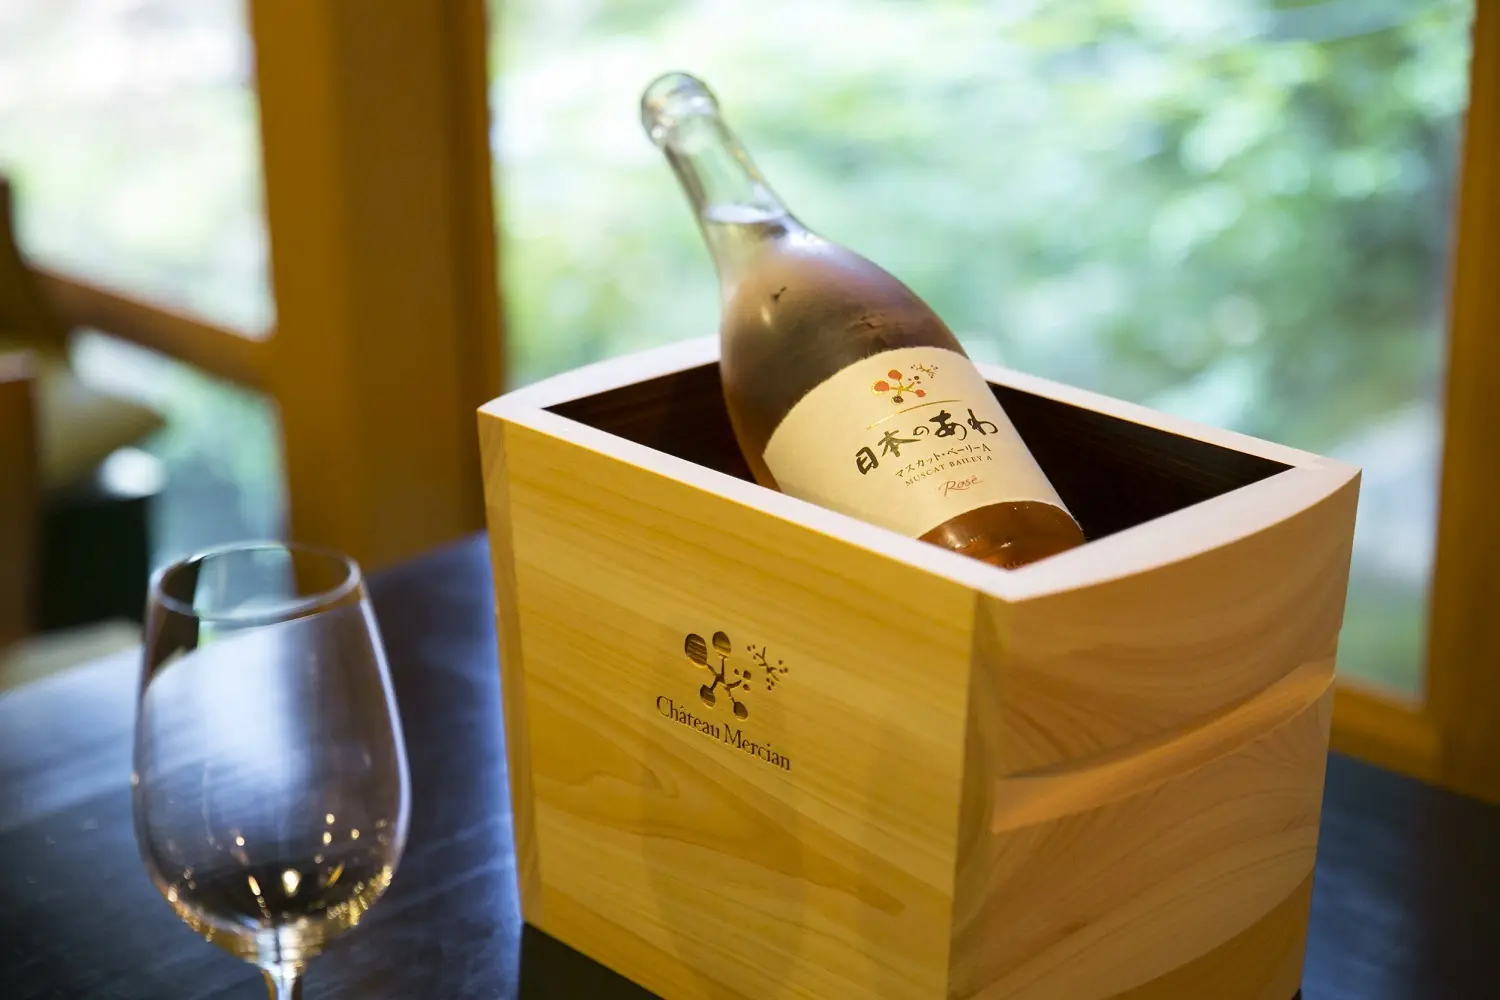 素晴らしい日本庭園を眺めながら、日本ワインを味わう……シャトー・メルシャン『Tasting Nippon』イベントレポート【飲むんだったら、イケてるワインWEB特別篇】_1_2